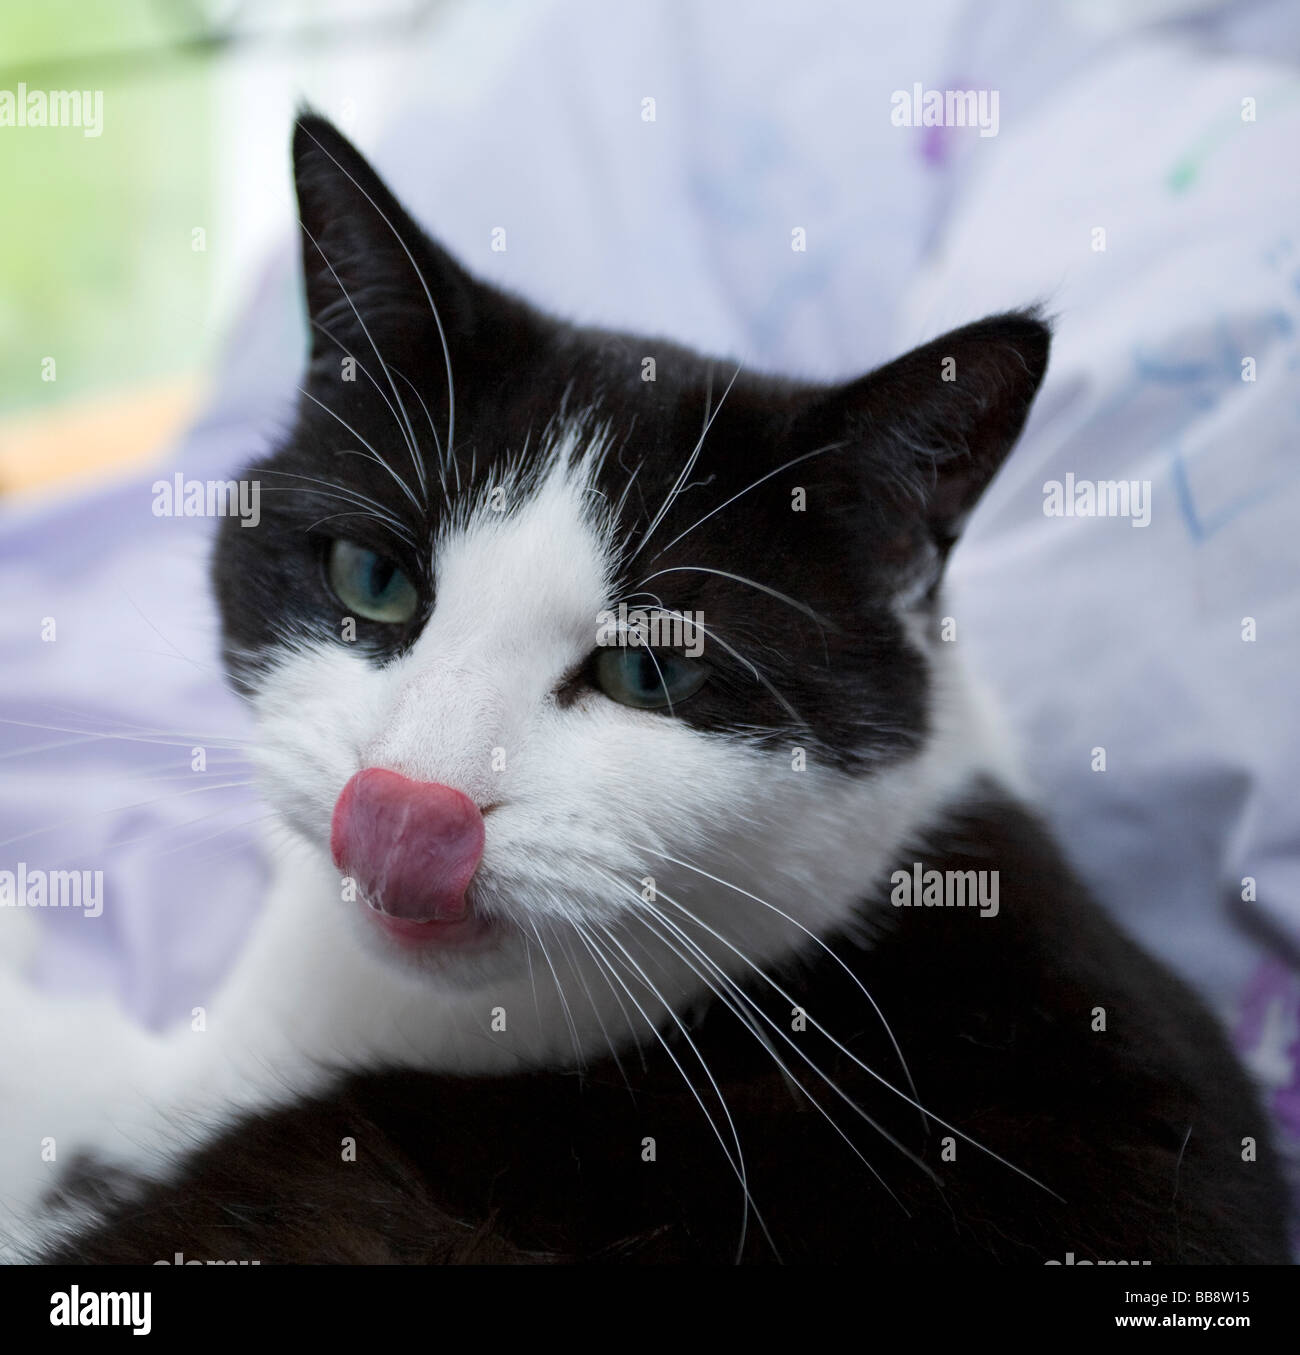 Ein erwachsenes Weibchen schwarz-weisse Katze (Felis catus) leckt ihre Lippen und ihre Nase gleichzeitig berühren. Stockfoto